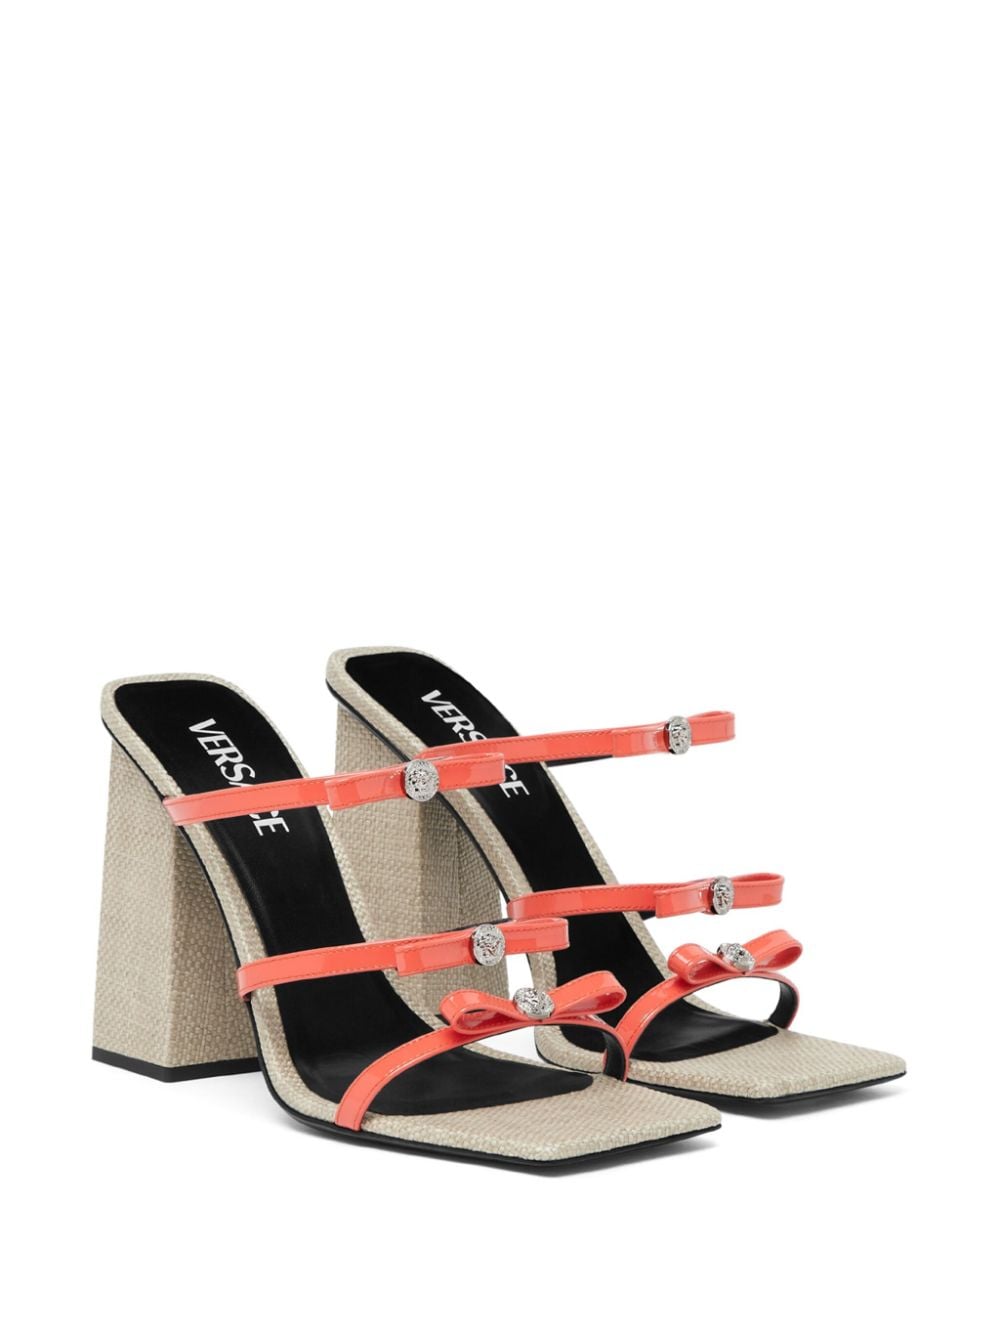 Versace Gianni sandalen met hoge hak - Oranje